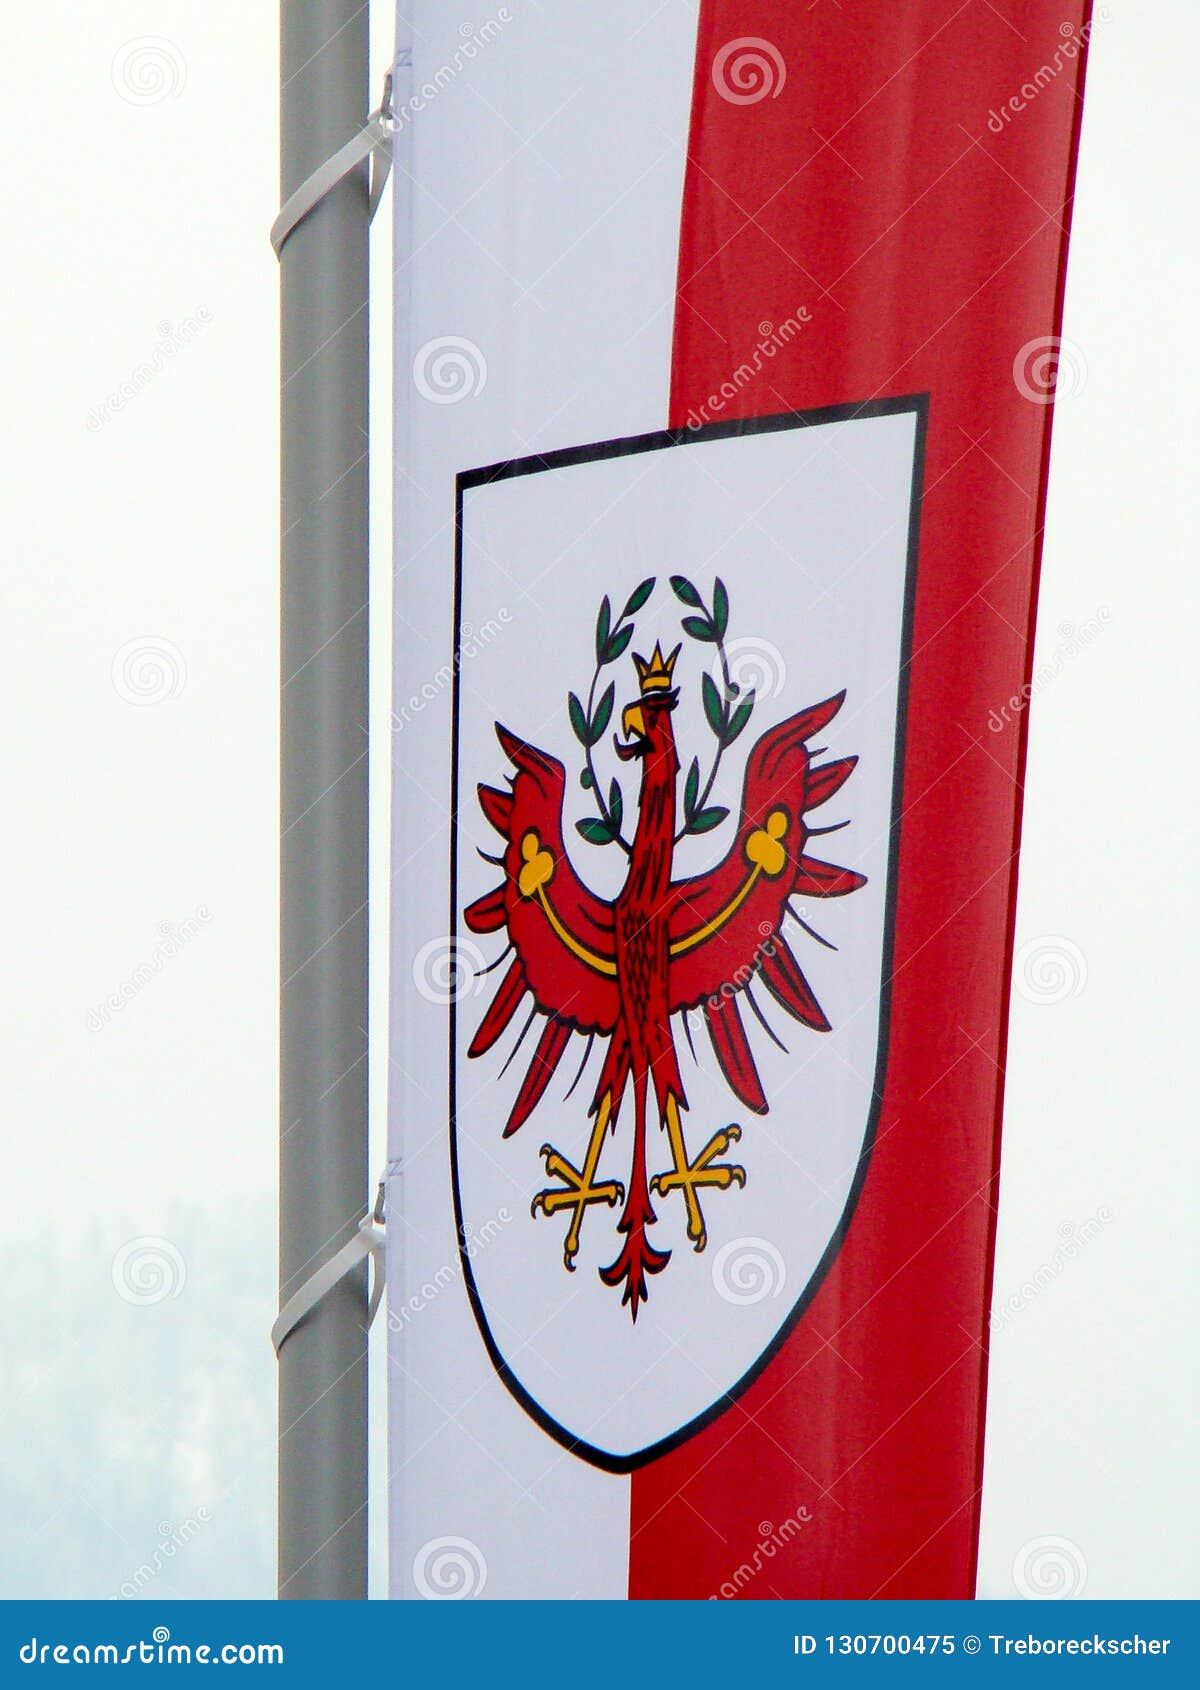 Wappen Auf Der Flagge Von Tirol In Osterreich Stockbild Bild Von Beamter Sonderkommando 130700475